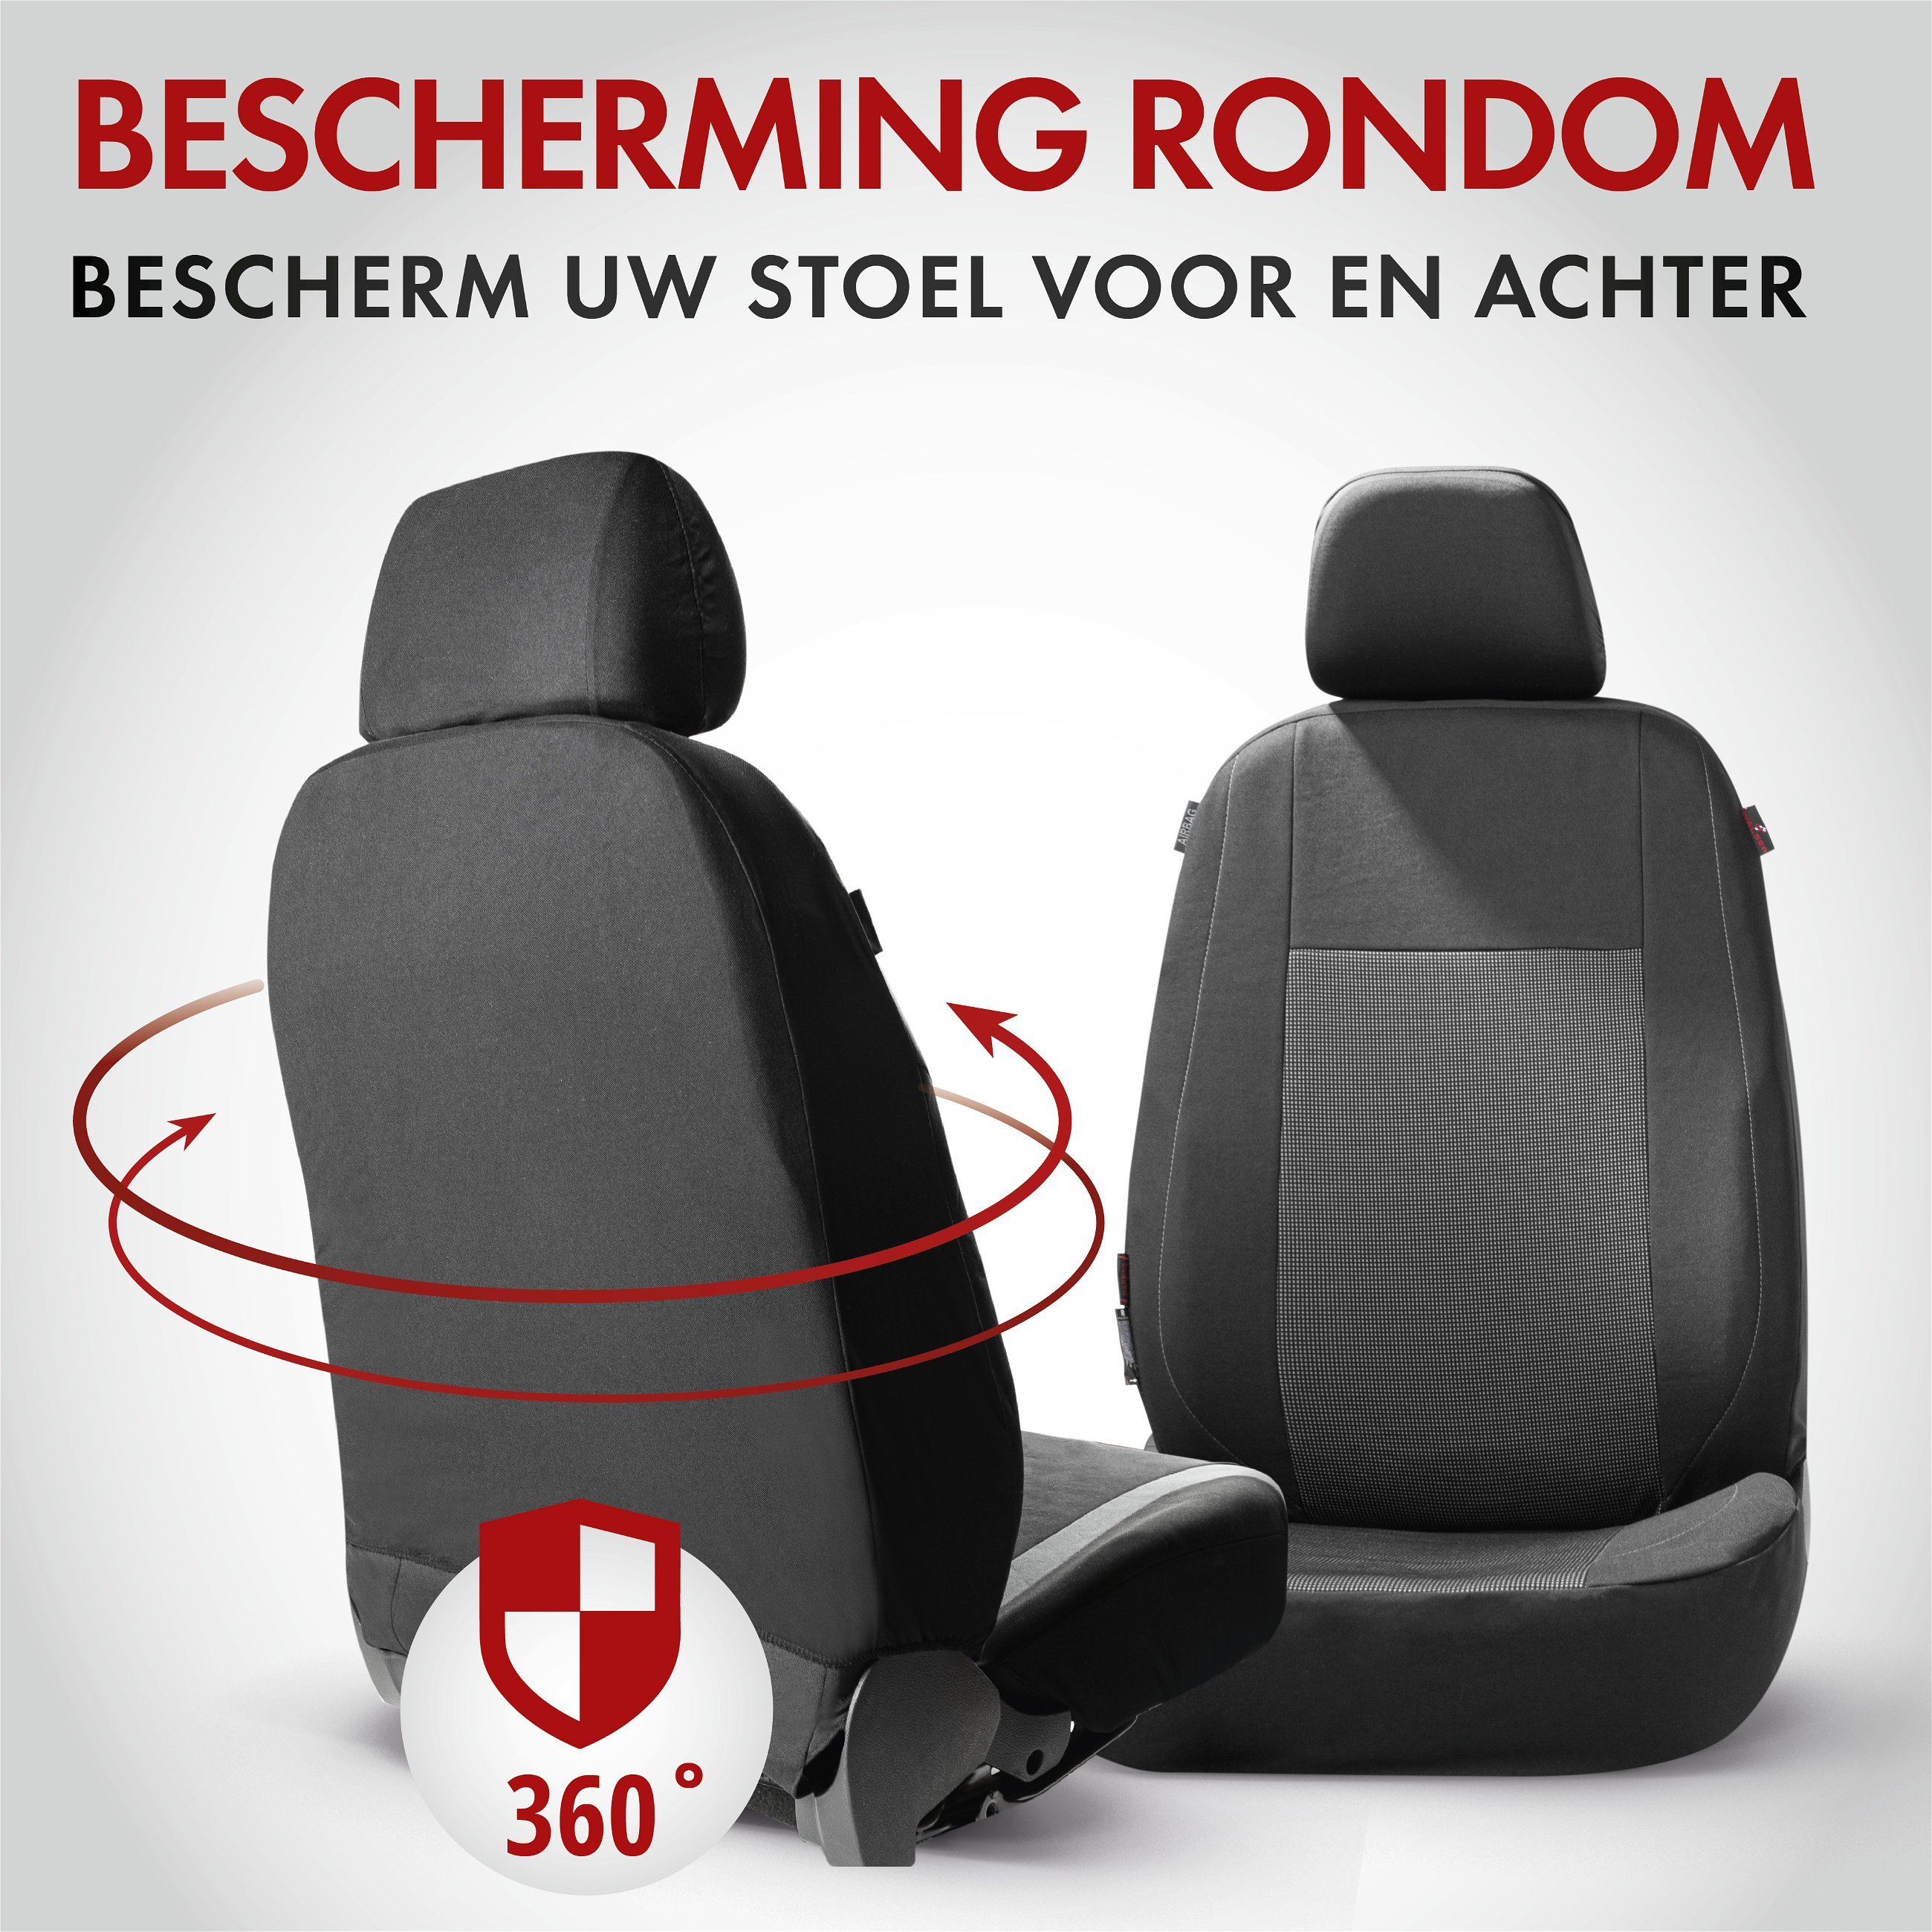 Premium Autostoelbekleding Ardwell met Zipper ZIPP-IT, Autostoelhoes set, 2 stoelbeschermer voor voorstoel, 1 stoelbeschermer voor achterbank zwart/grijs